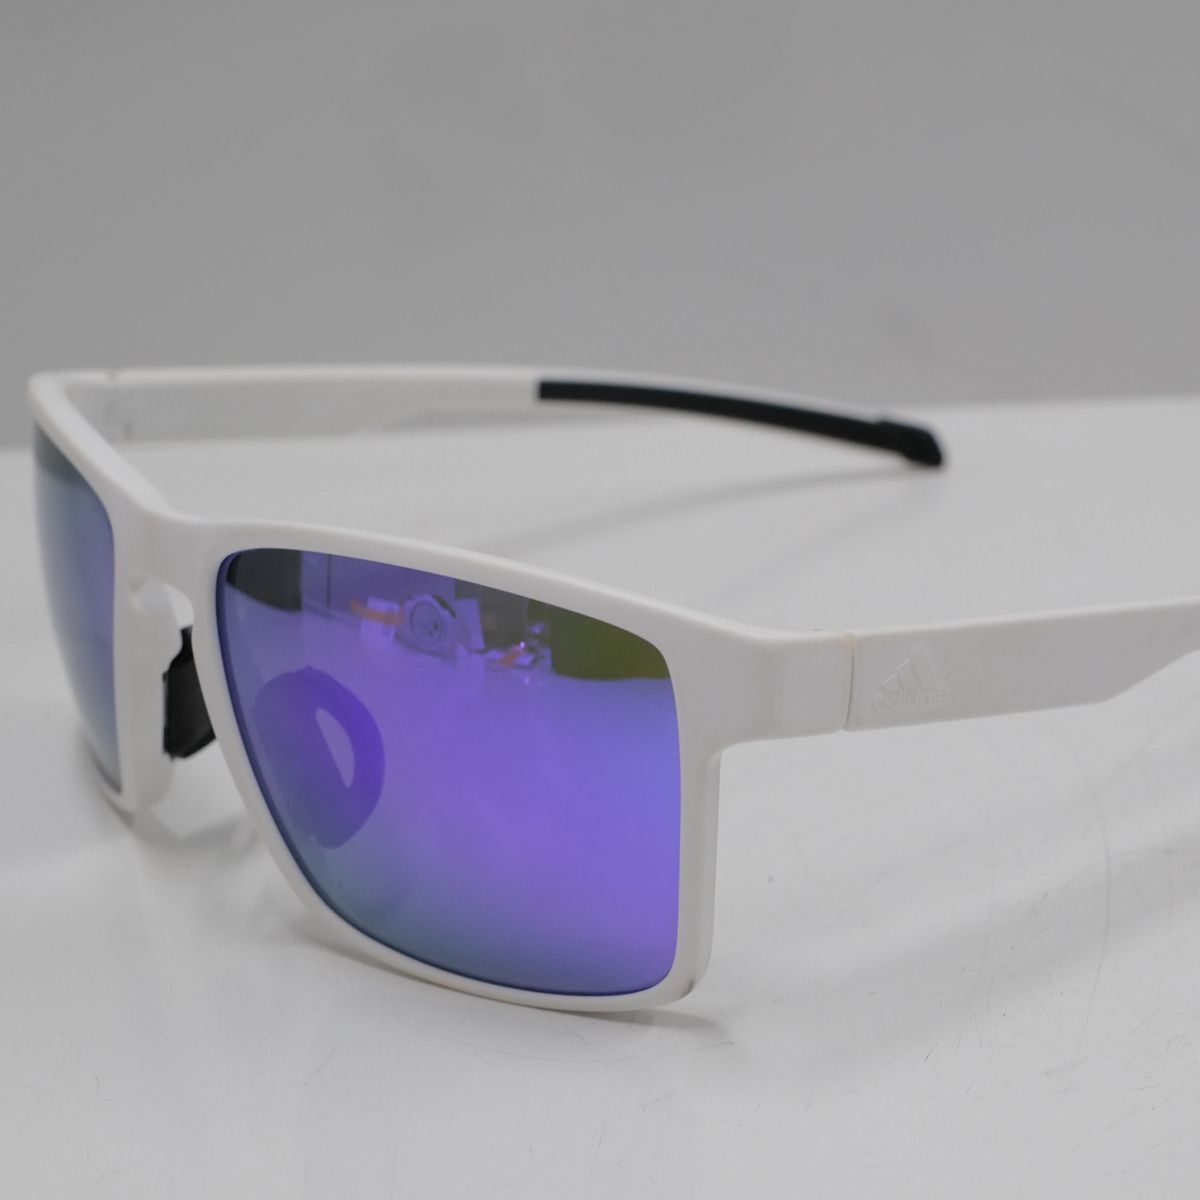 adidas WAYFINDER спортивные солнцезащитные очки USED прекрасный товар way искатель бег Golf зеркало унисекс для мужчин и женщин б/у X5417